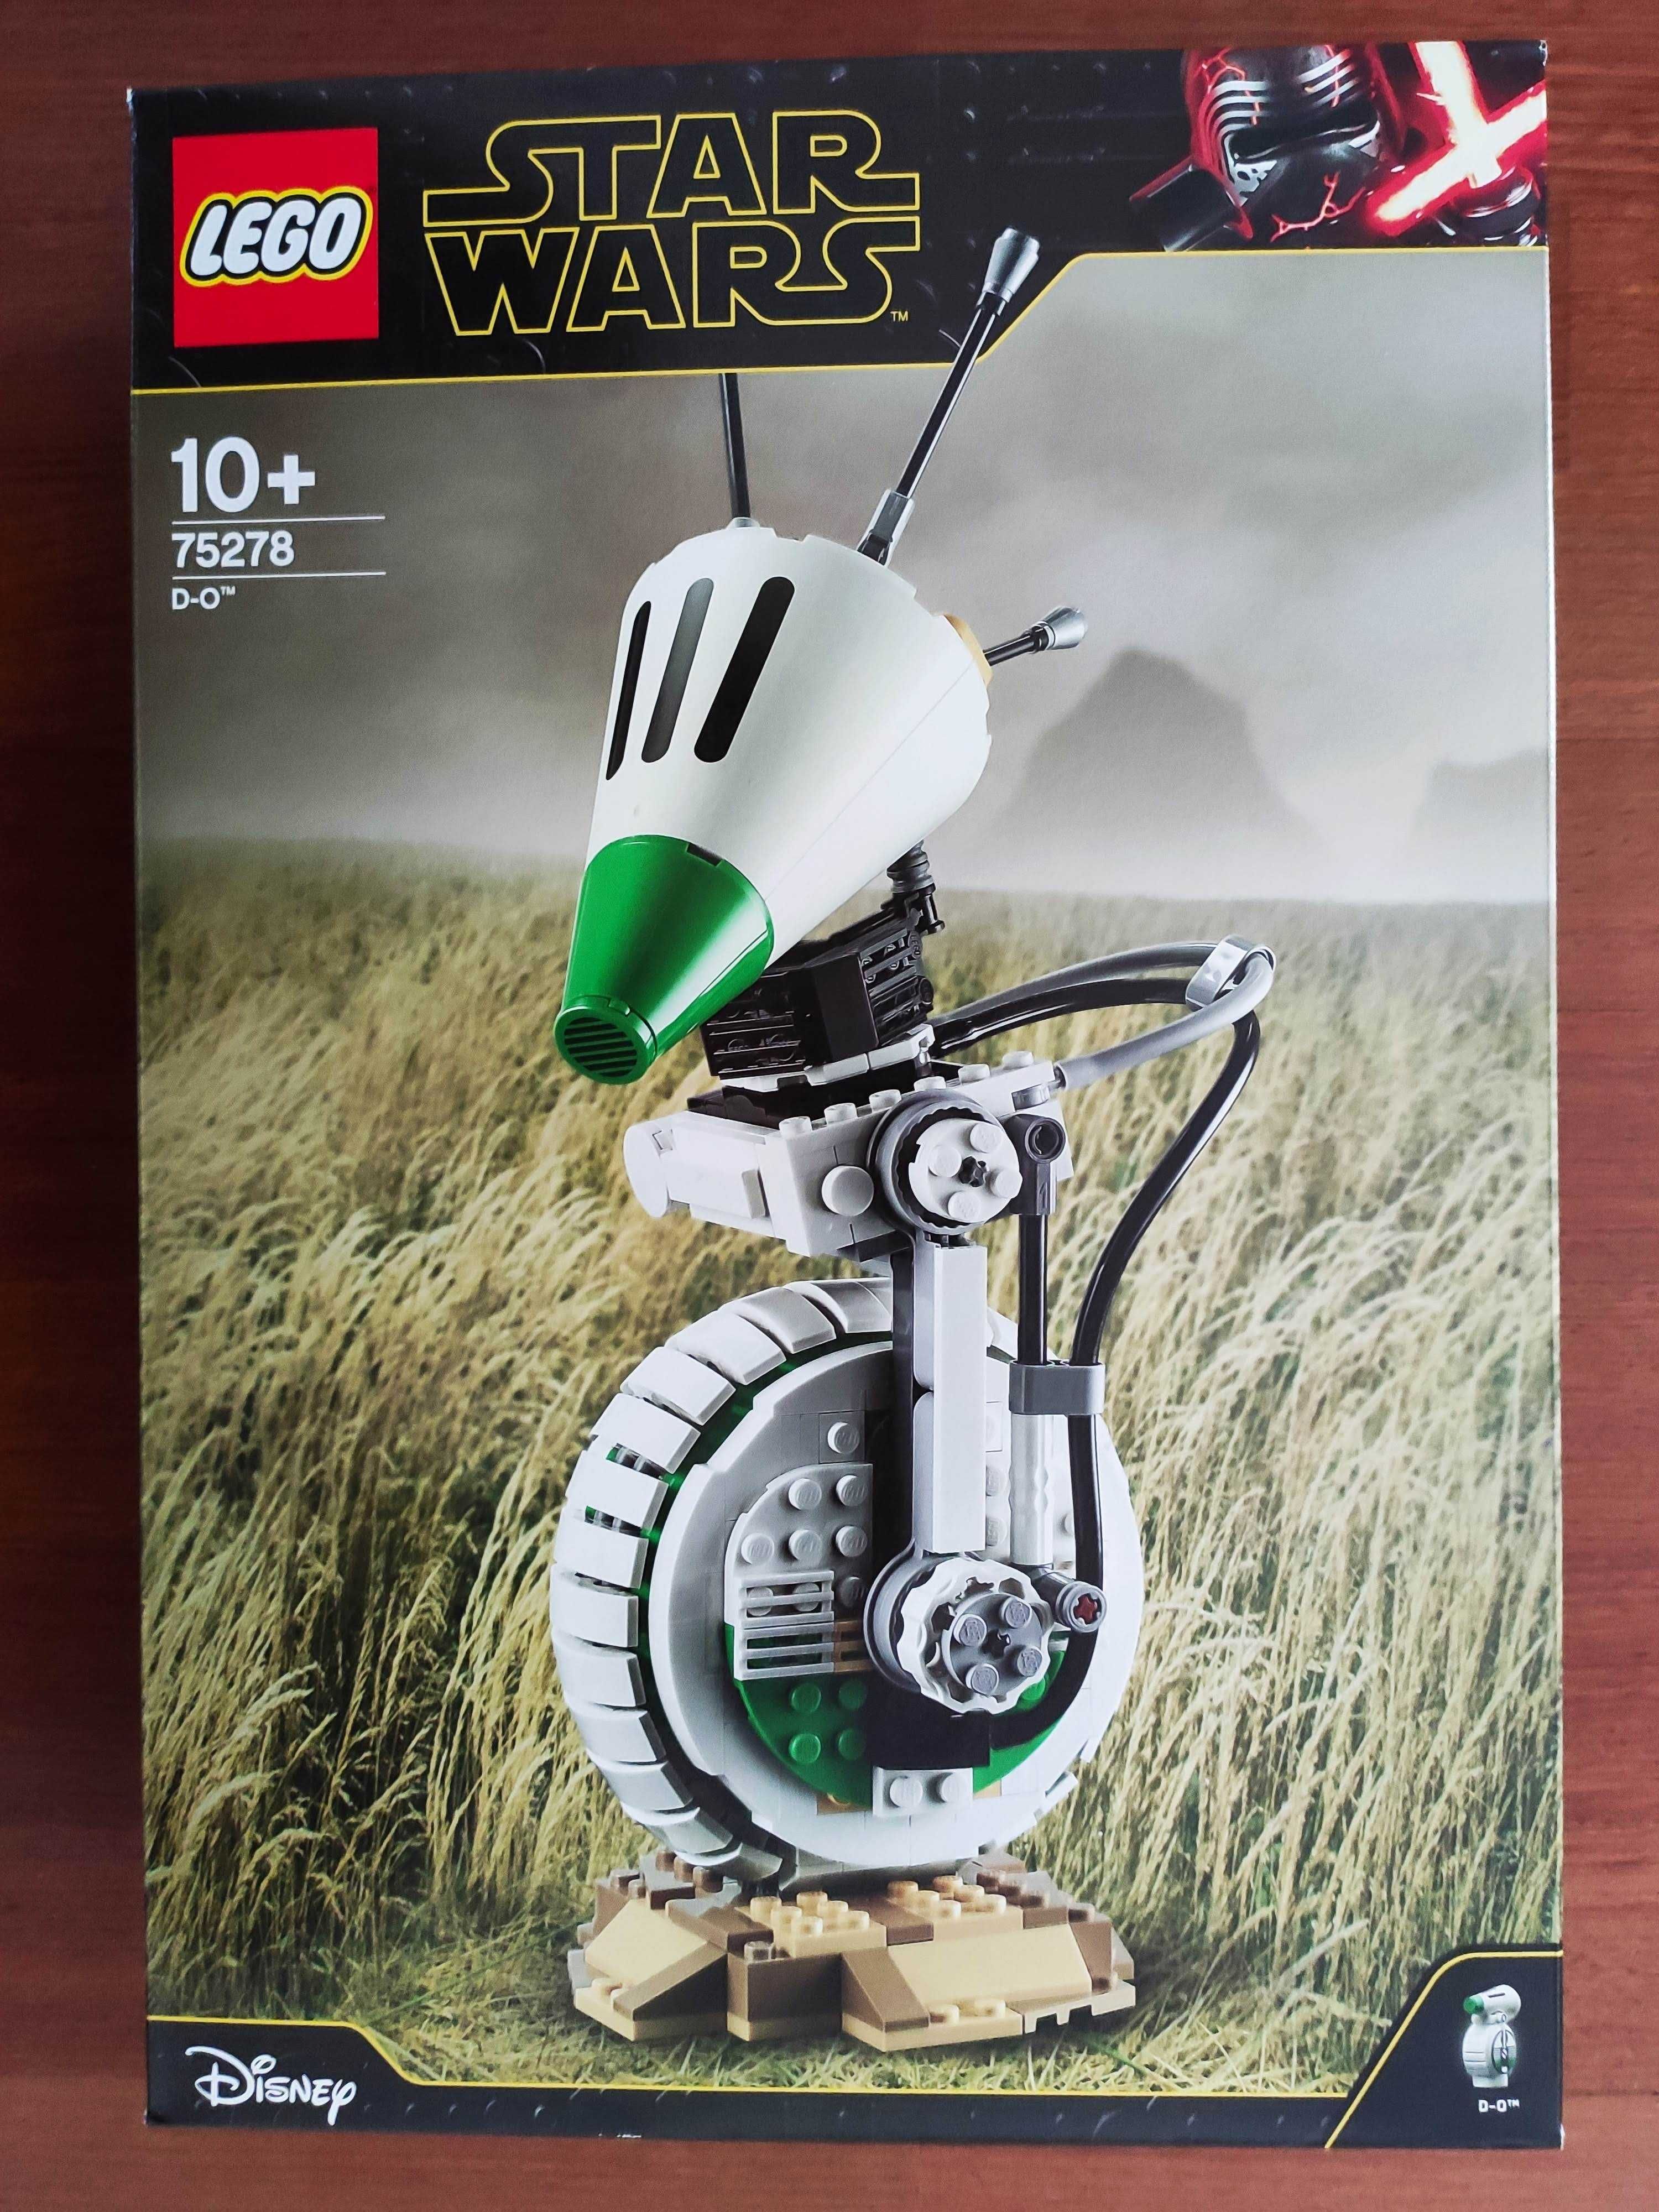 Lego Star Wars 75278 D-O Droid